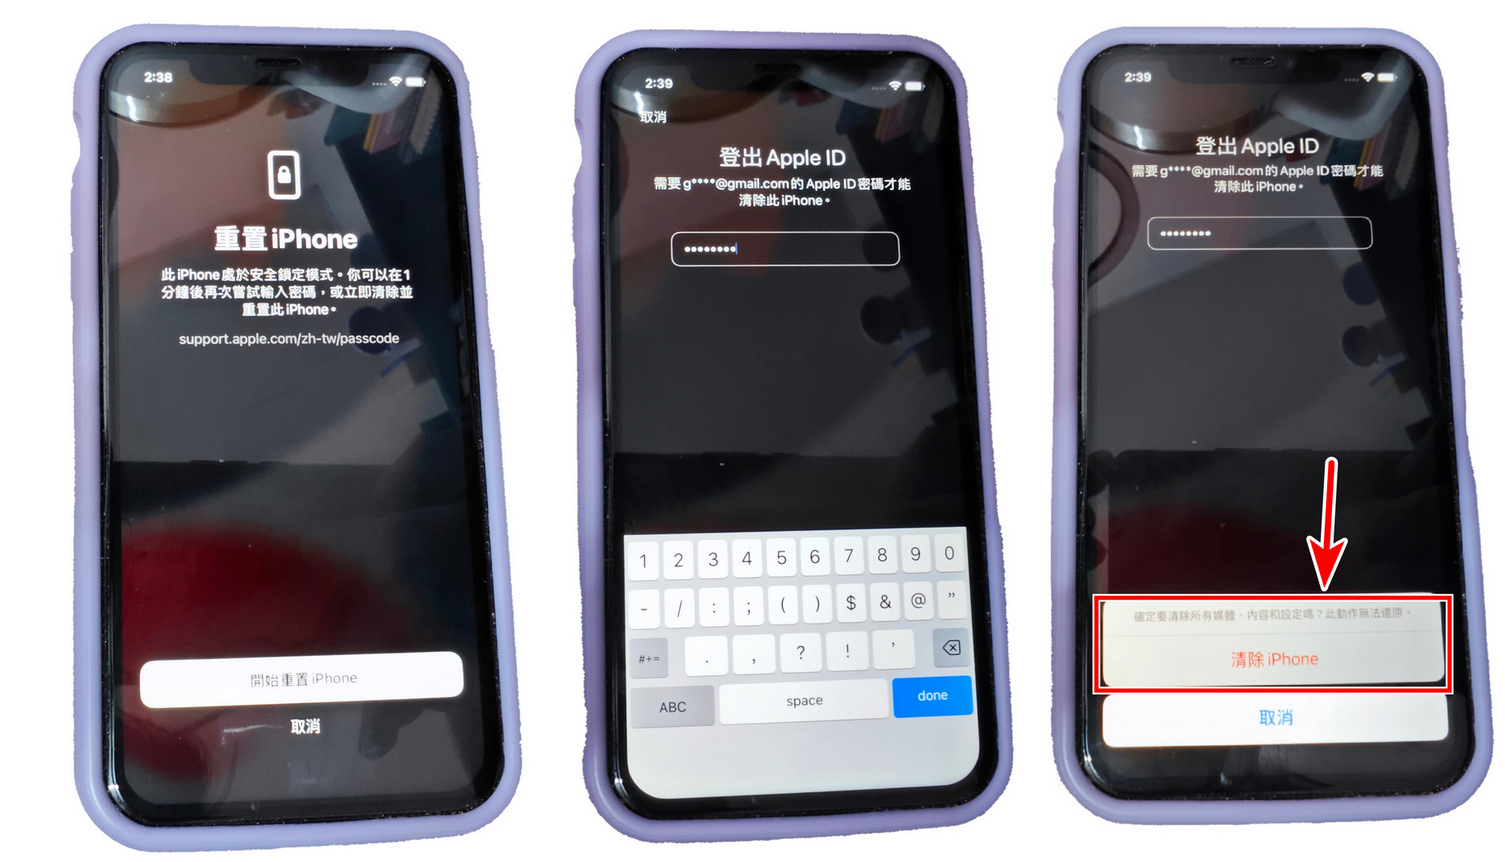 iphone忘記螢幕密碼怎麼辦，3種免電腦解鎖方法! - 已停用iPhone 連接iTunes - 敗家達人推薦